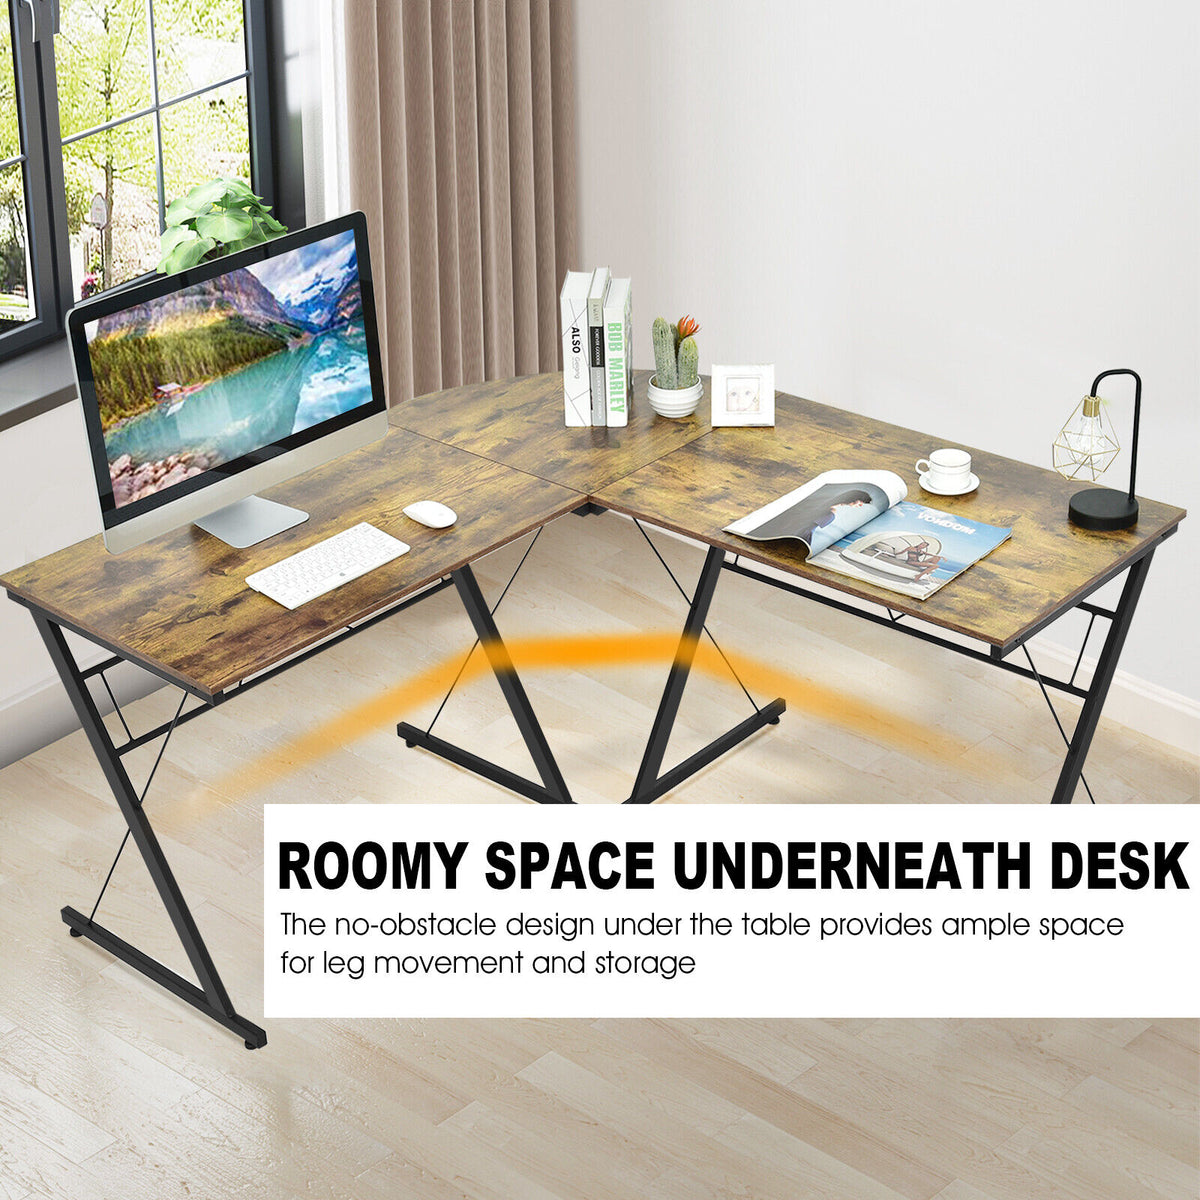 59" L-Shaped Corner Desk Computer Table for Home & Office Workstation